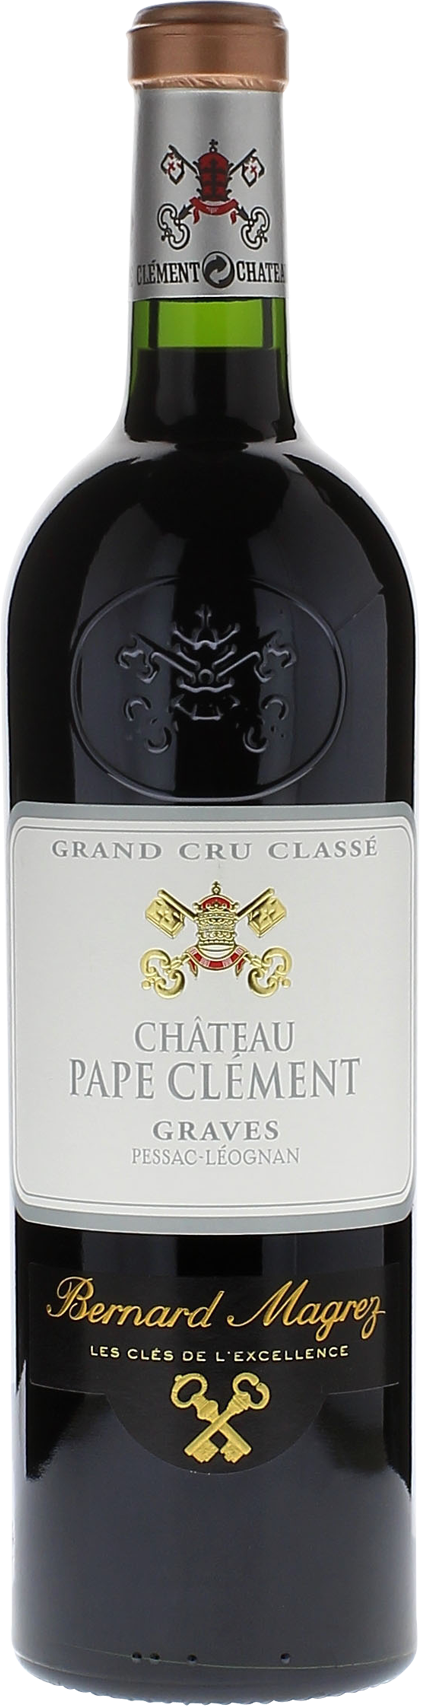 Pape clement rouge 2010 Grand Cru Class Pessac-Lognan, Bordeaux rouge